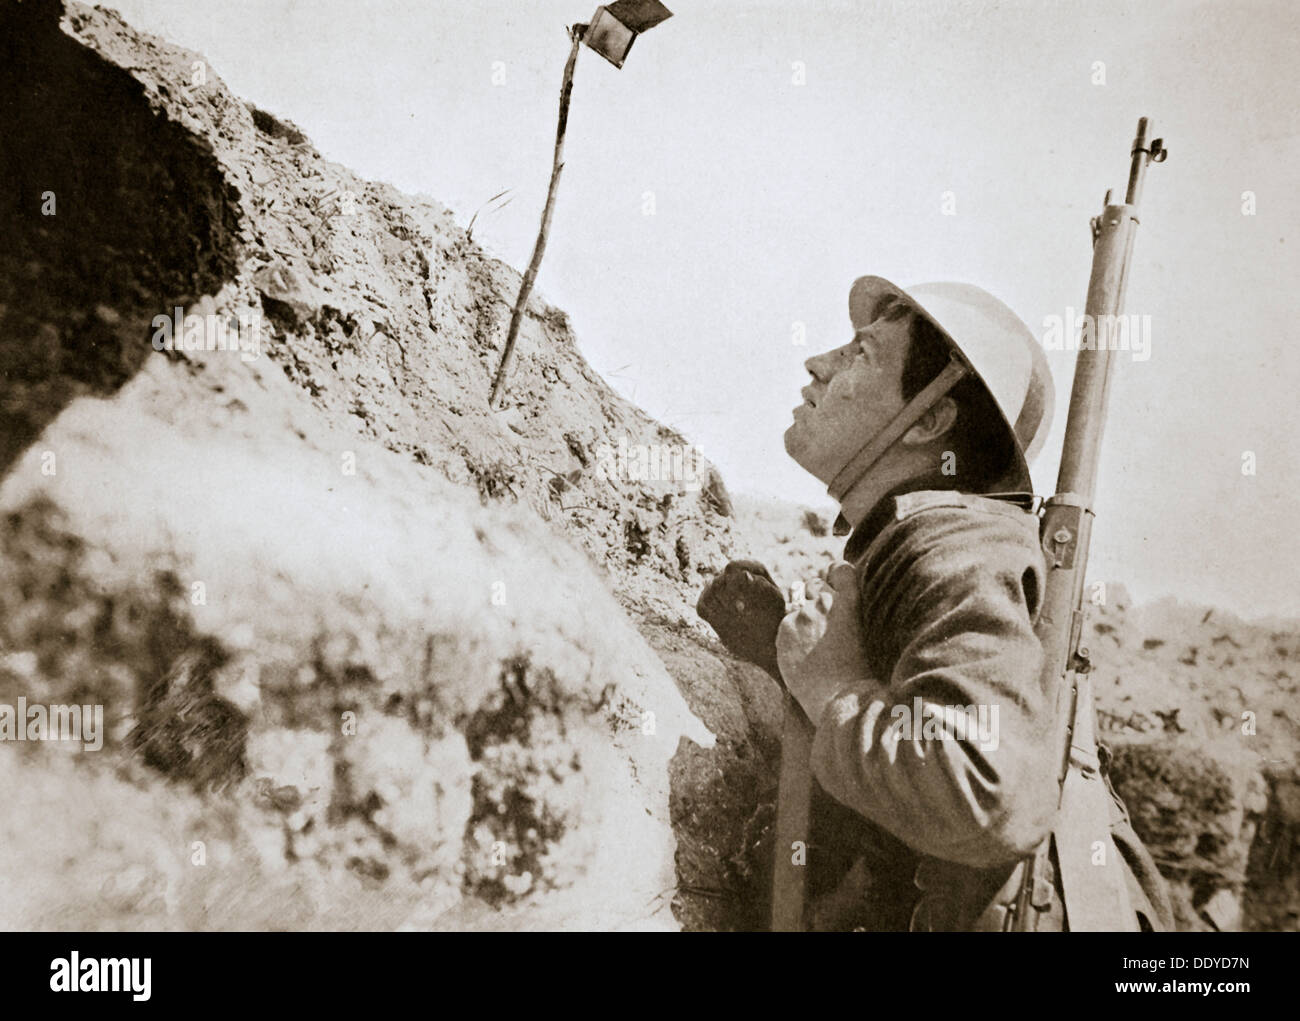 Une sentinelle dans les tranchées à la recherche grâce à un engin persicope, France, la Première Guerre mondiale, 1916. Artiste : Inconnu Banque D'Images